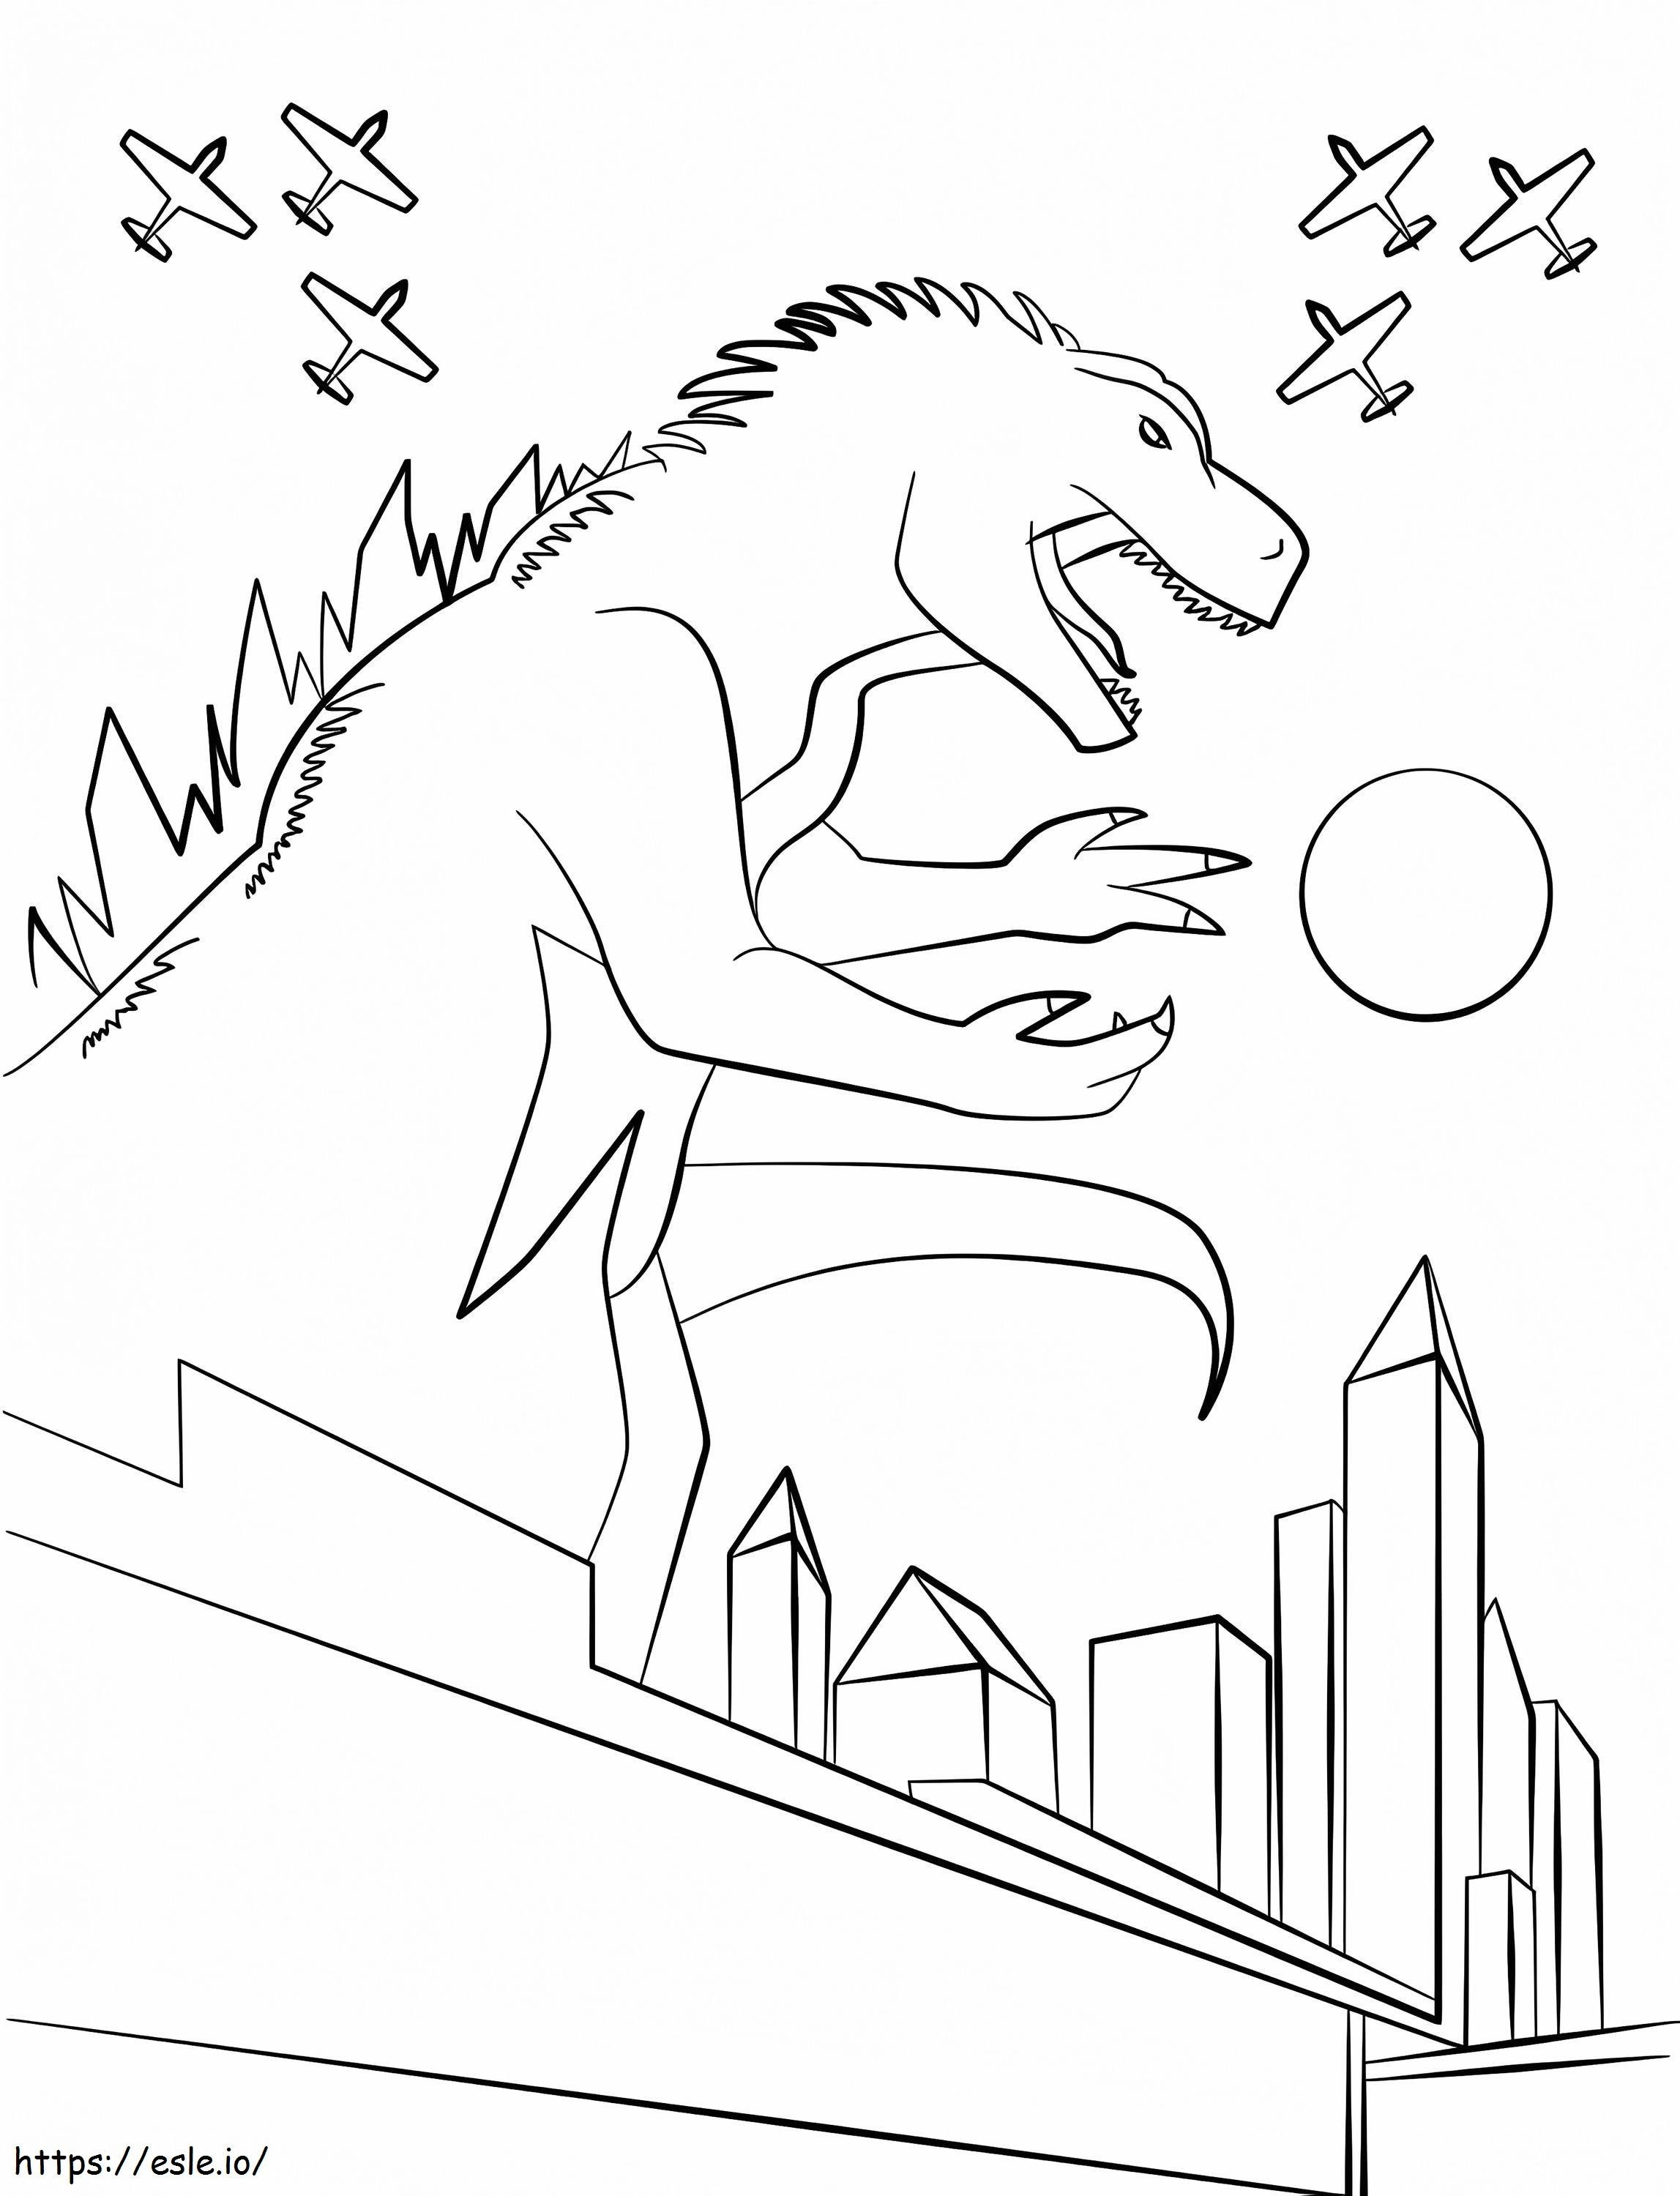 Godzilla 3 coloring page